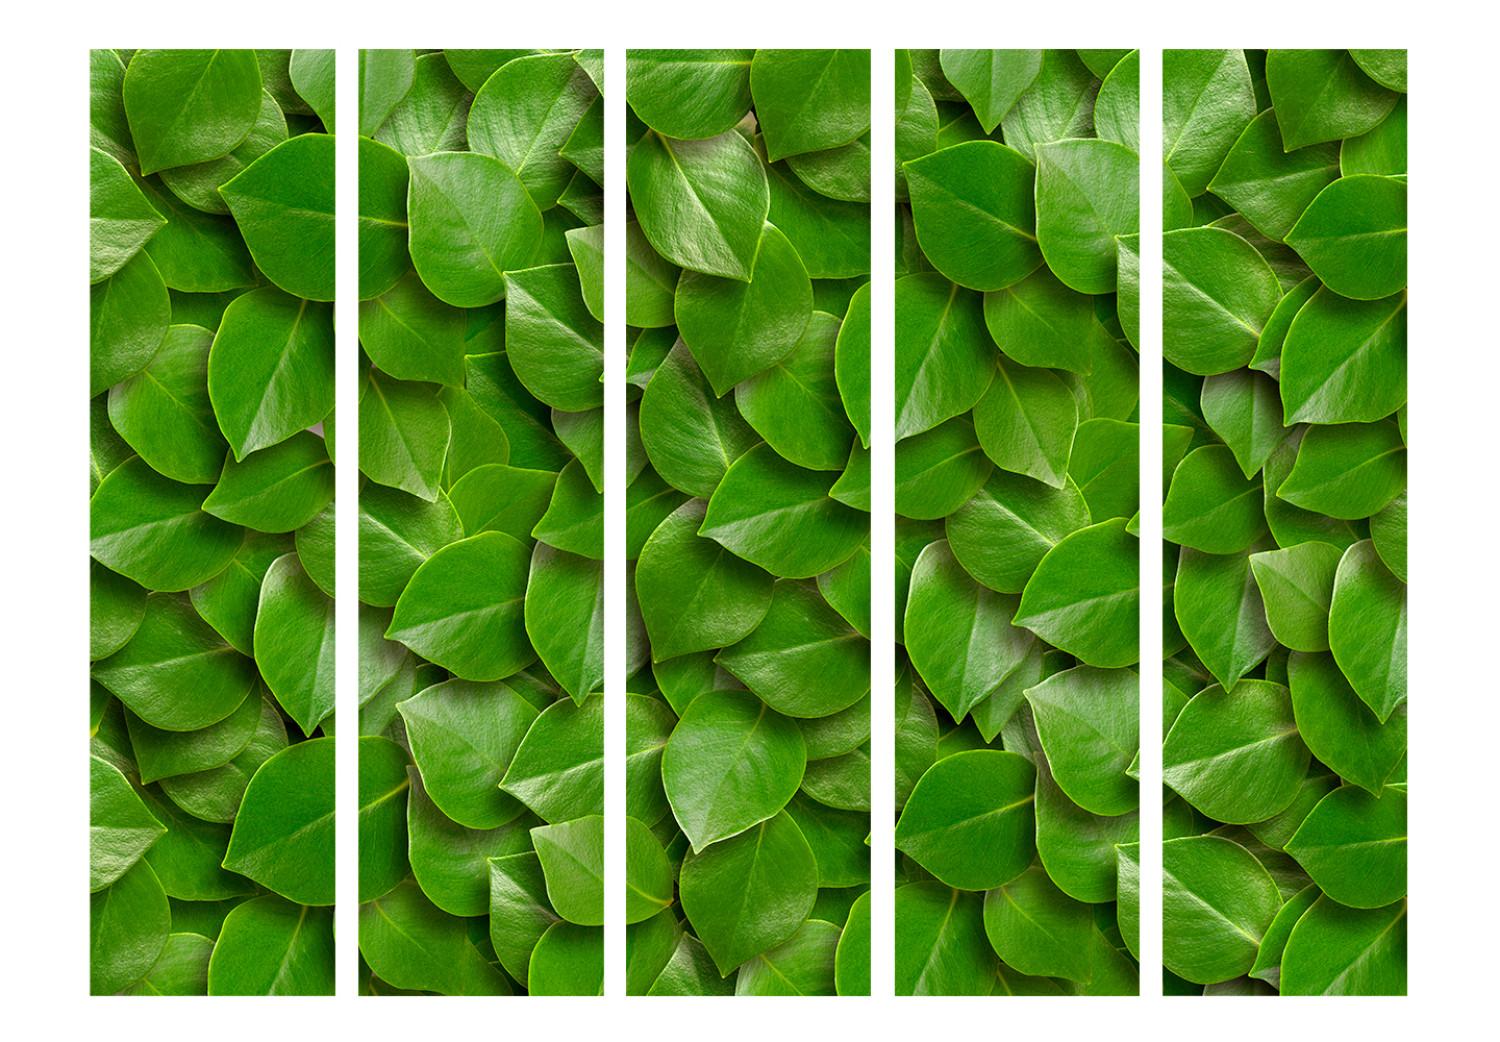 Biombo Jardín Secreto II - composición de texturas vegetales con hojas verdes